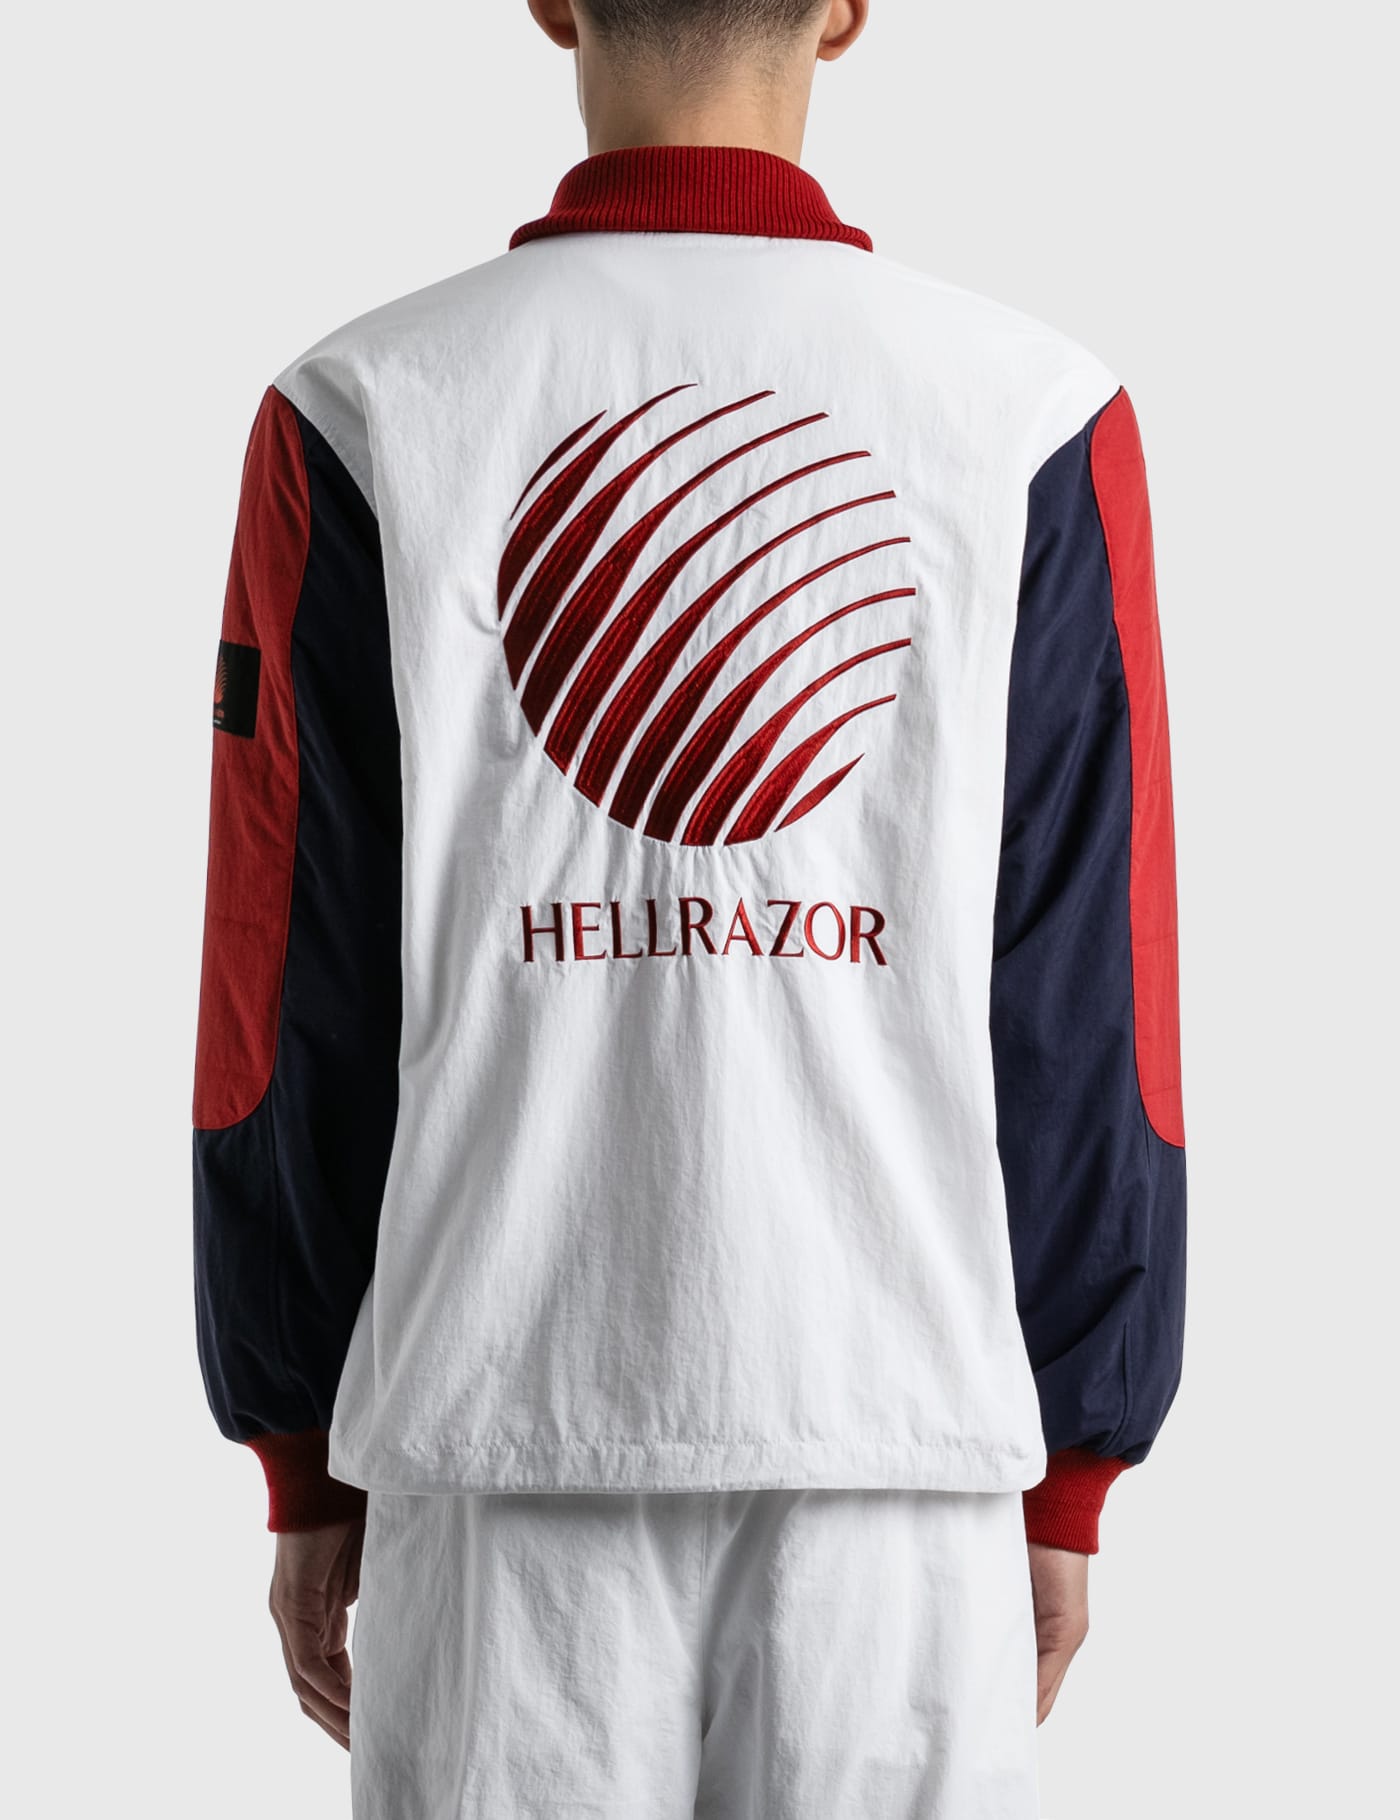 Hellrazor - Hellrazor X Fila Ruff Ride Jacket | HBX - Globally